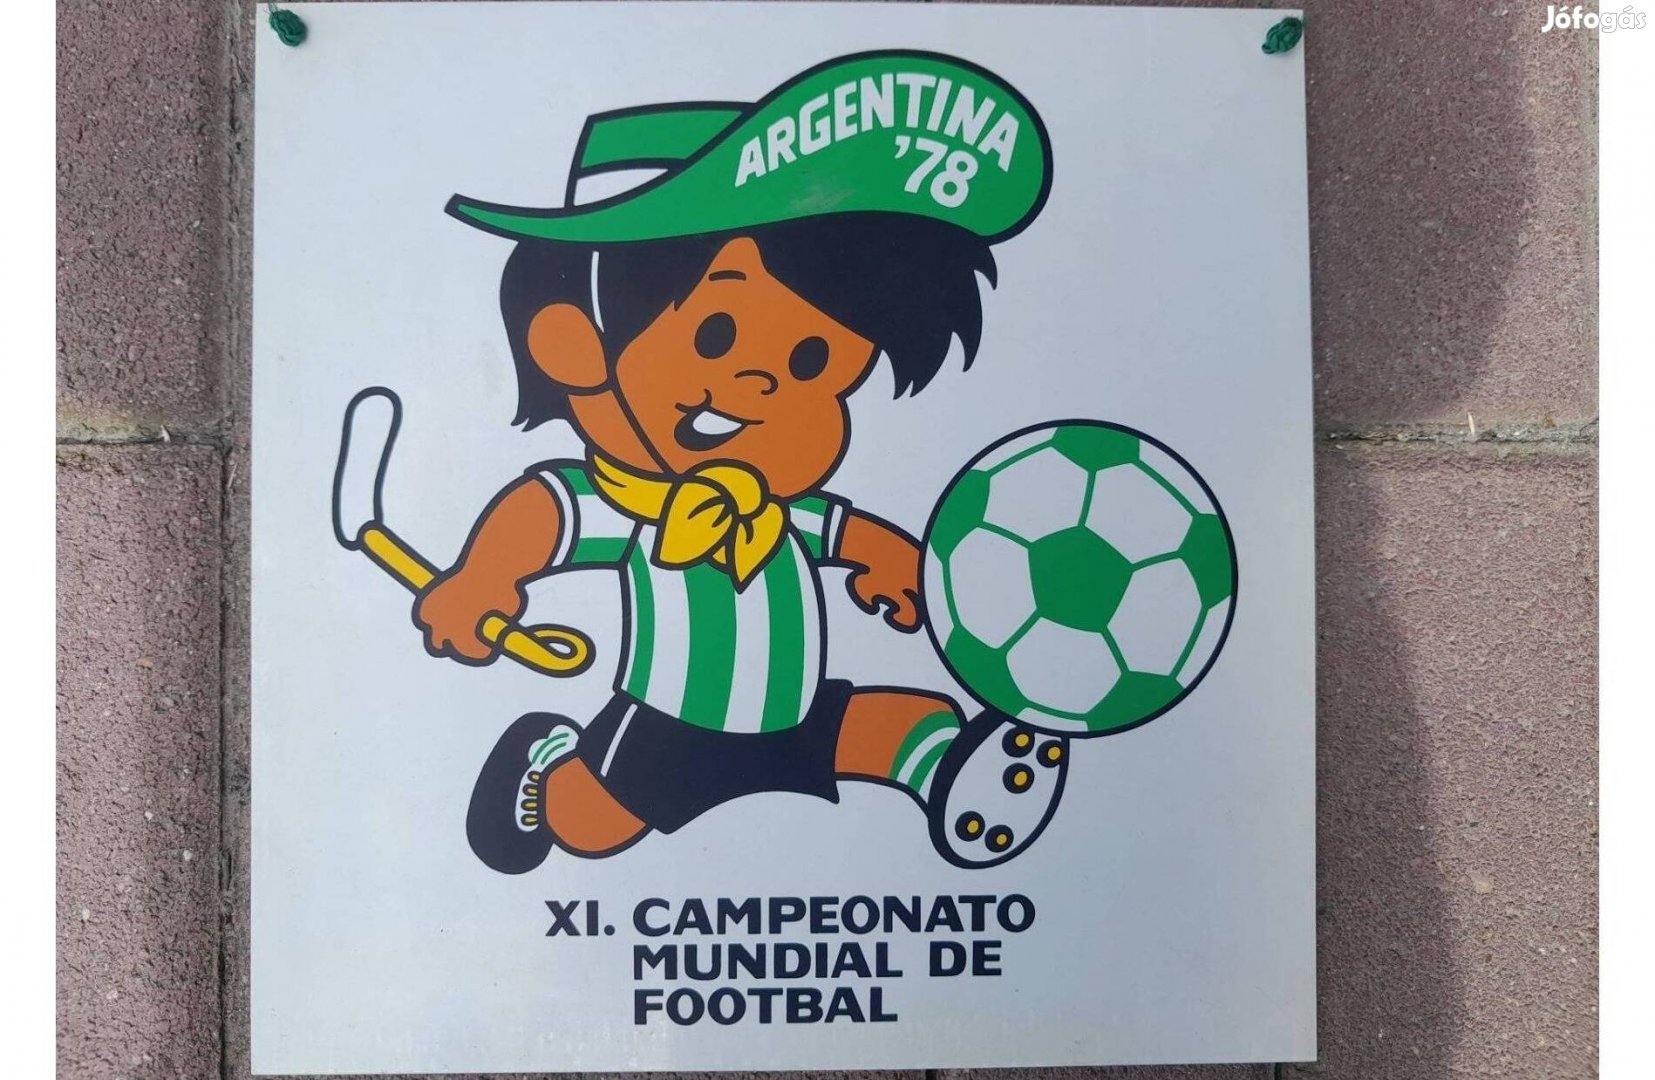 Argentina'78 futball világbajnokság reklámtábla, hibátlan,focirelikvia